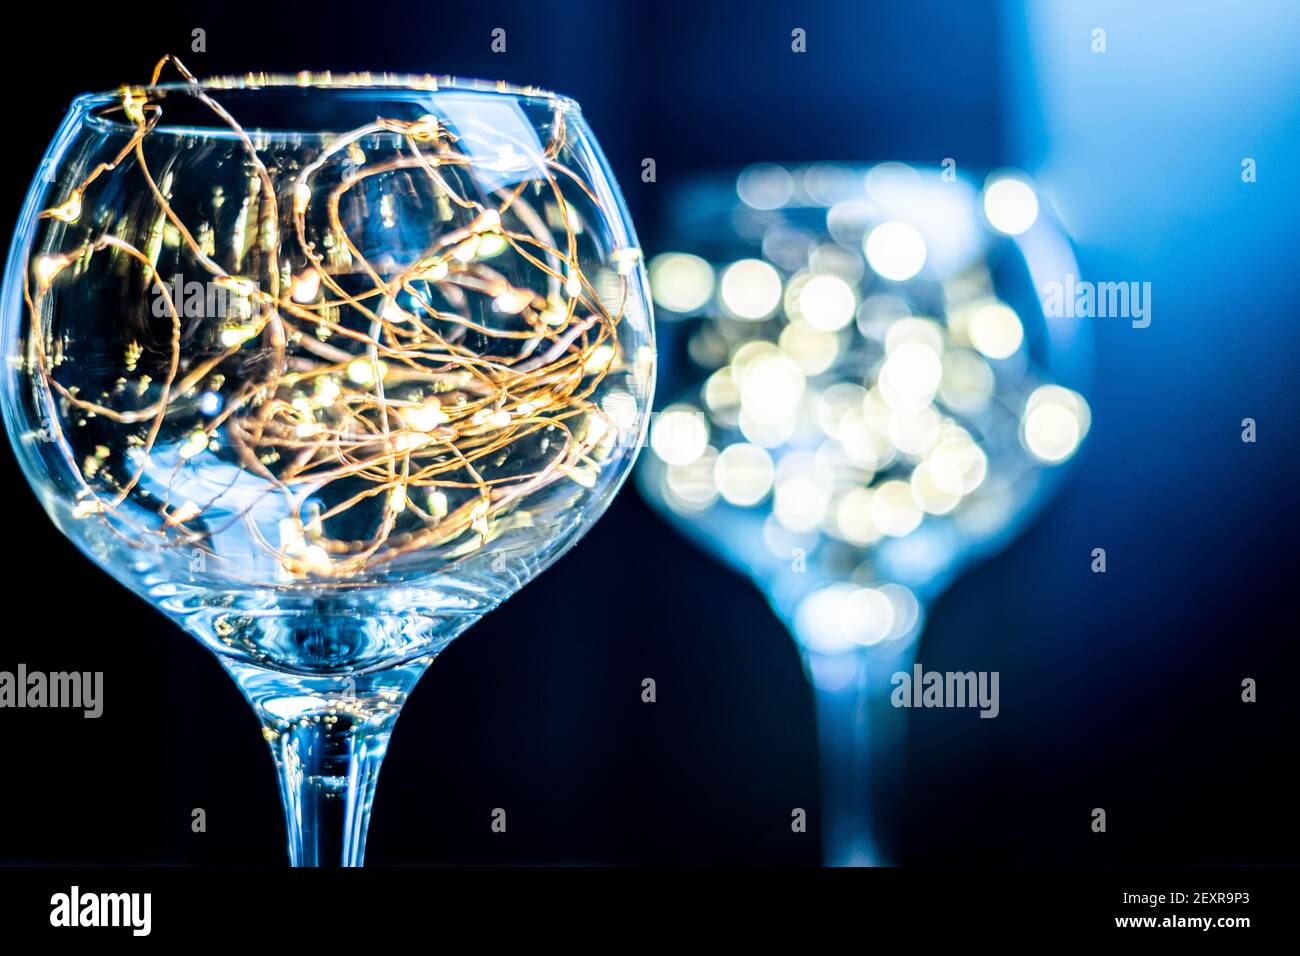 Gin Glas mit Feenlicht im Inneren mit einem anderen im Hintergrund verschwommen, helle Lichter in einem glänzenden Glas vor schwarzem Hintergrund, launisch und stilvoll Stockfoto